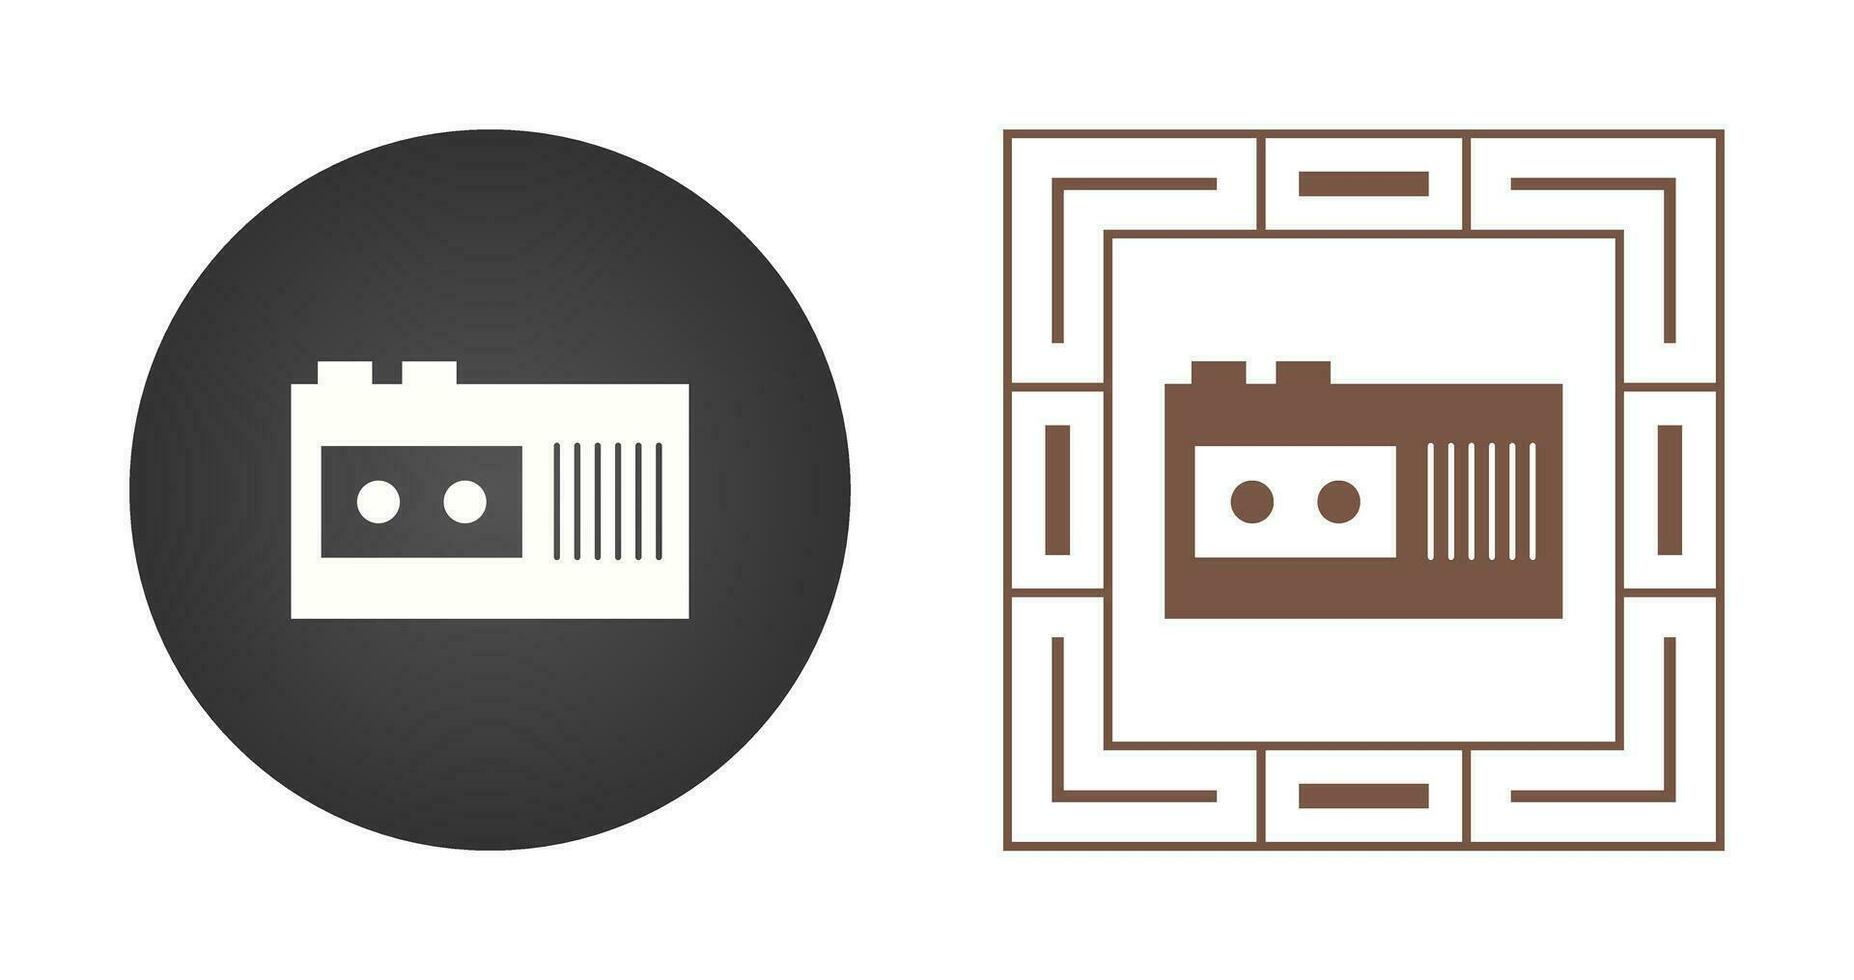 Tape Recorder Vector Icon